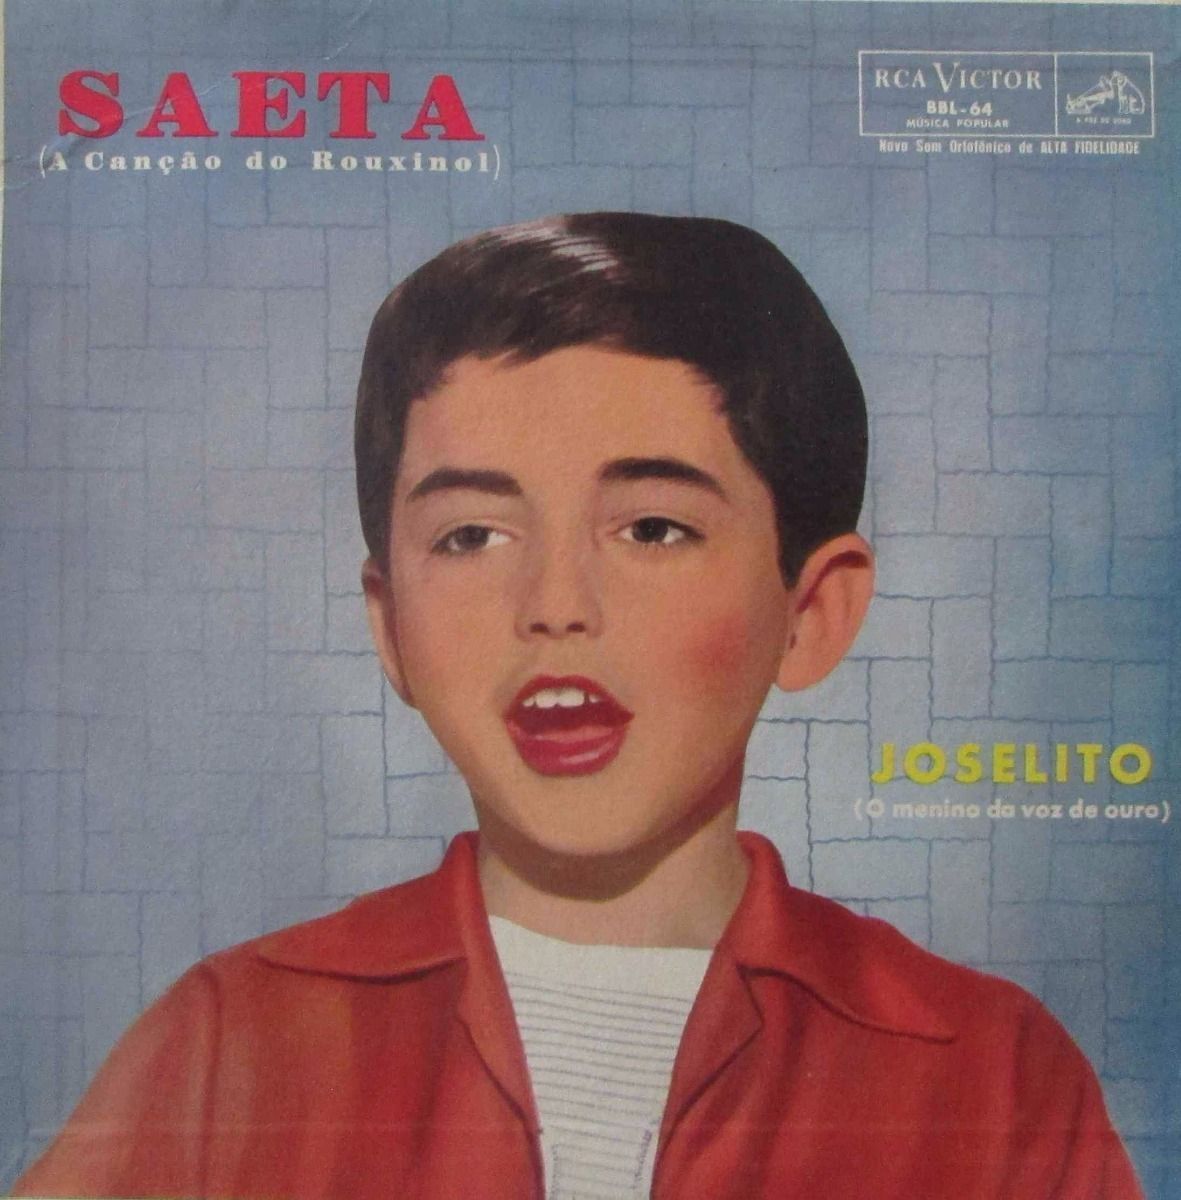 Imagem do álbum Saeta  do(a) artista Joselito